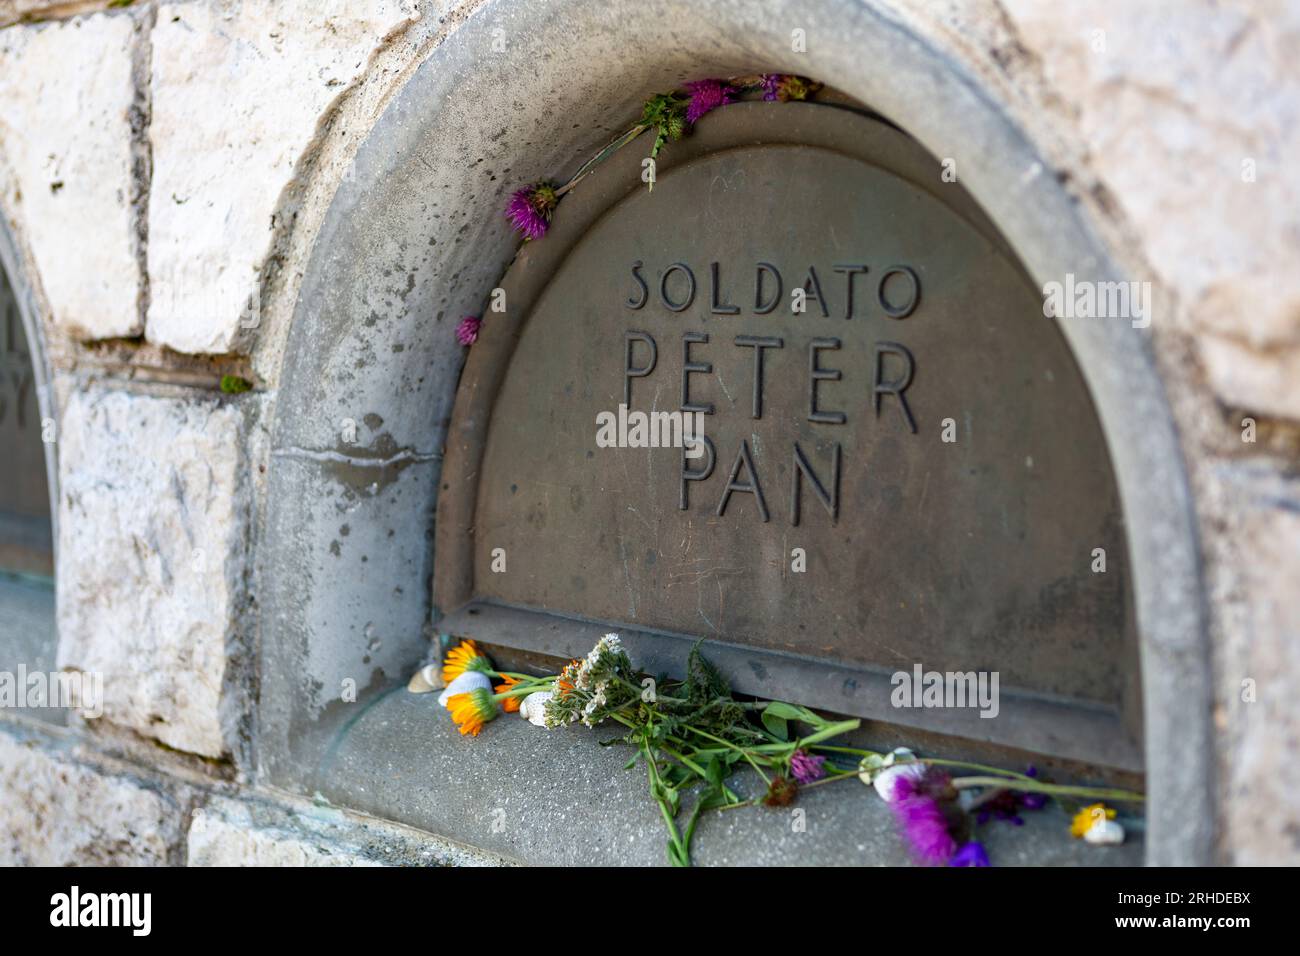 Peter Pan existierte wirklich. Er war ein ungarischer Soldat, der während des Ersten Weltkriegs auf dem Grappa starb und heute in der Gedenkstätte begraben ist. Stockfoto